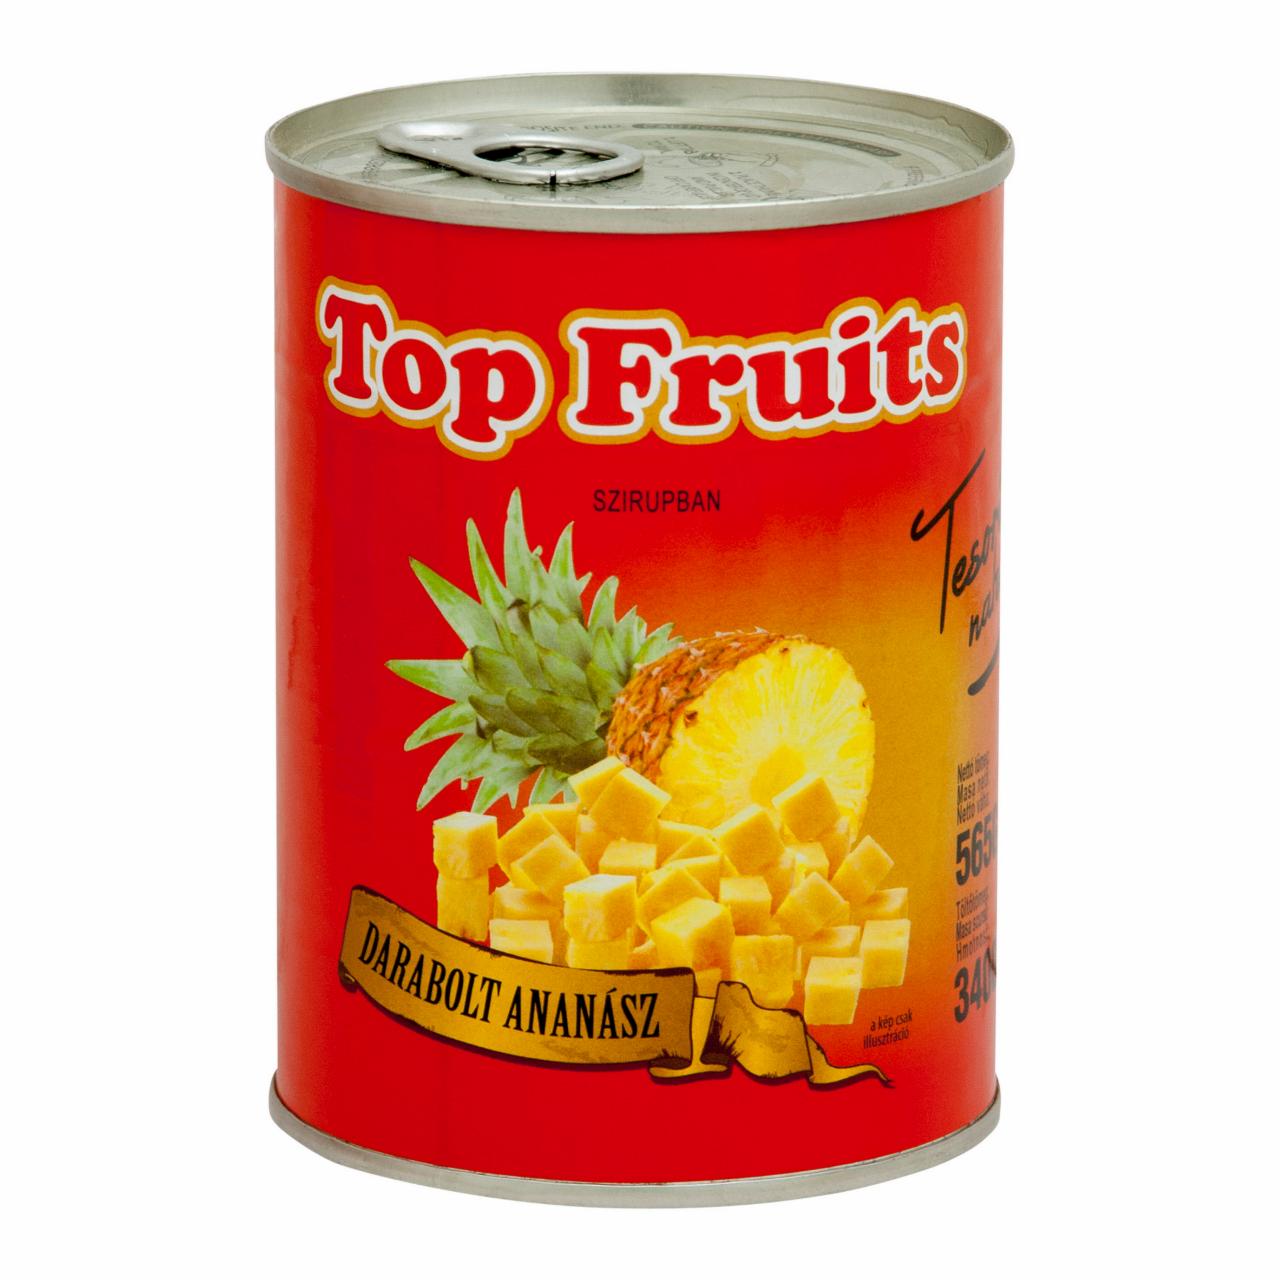 Képek - TOP FRUITS ananász darabolt enyhén cukros szirupban 565 g